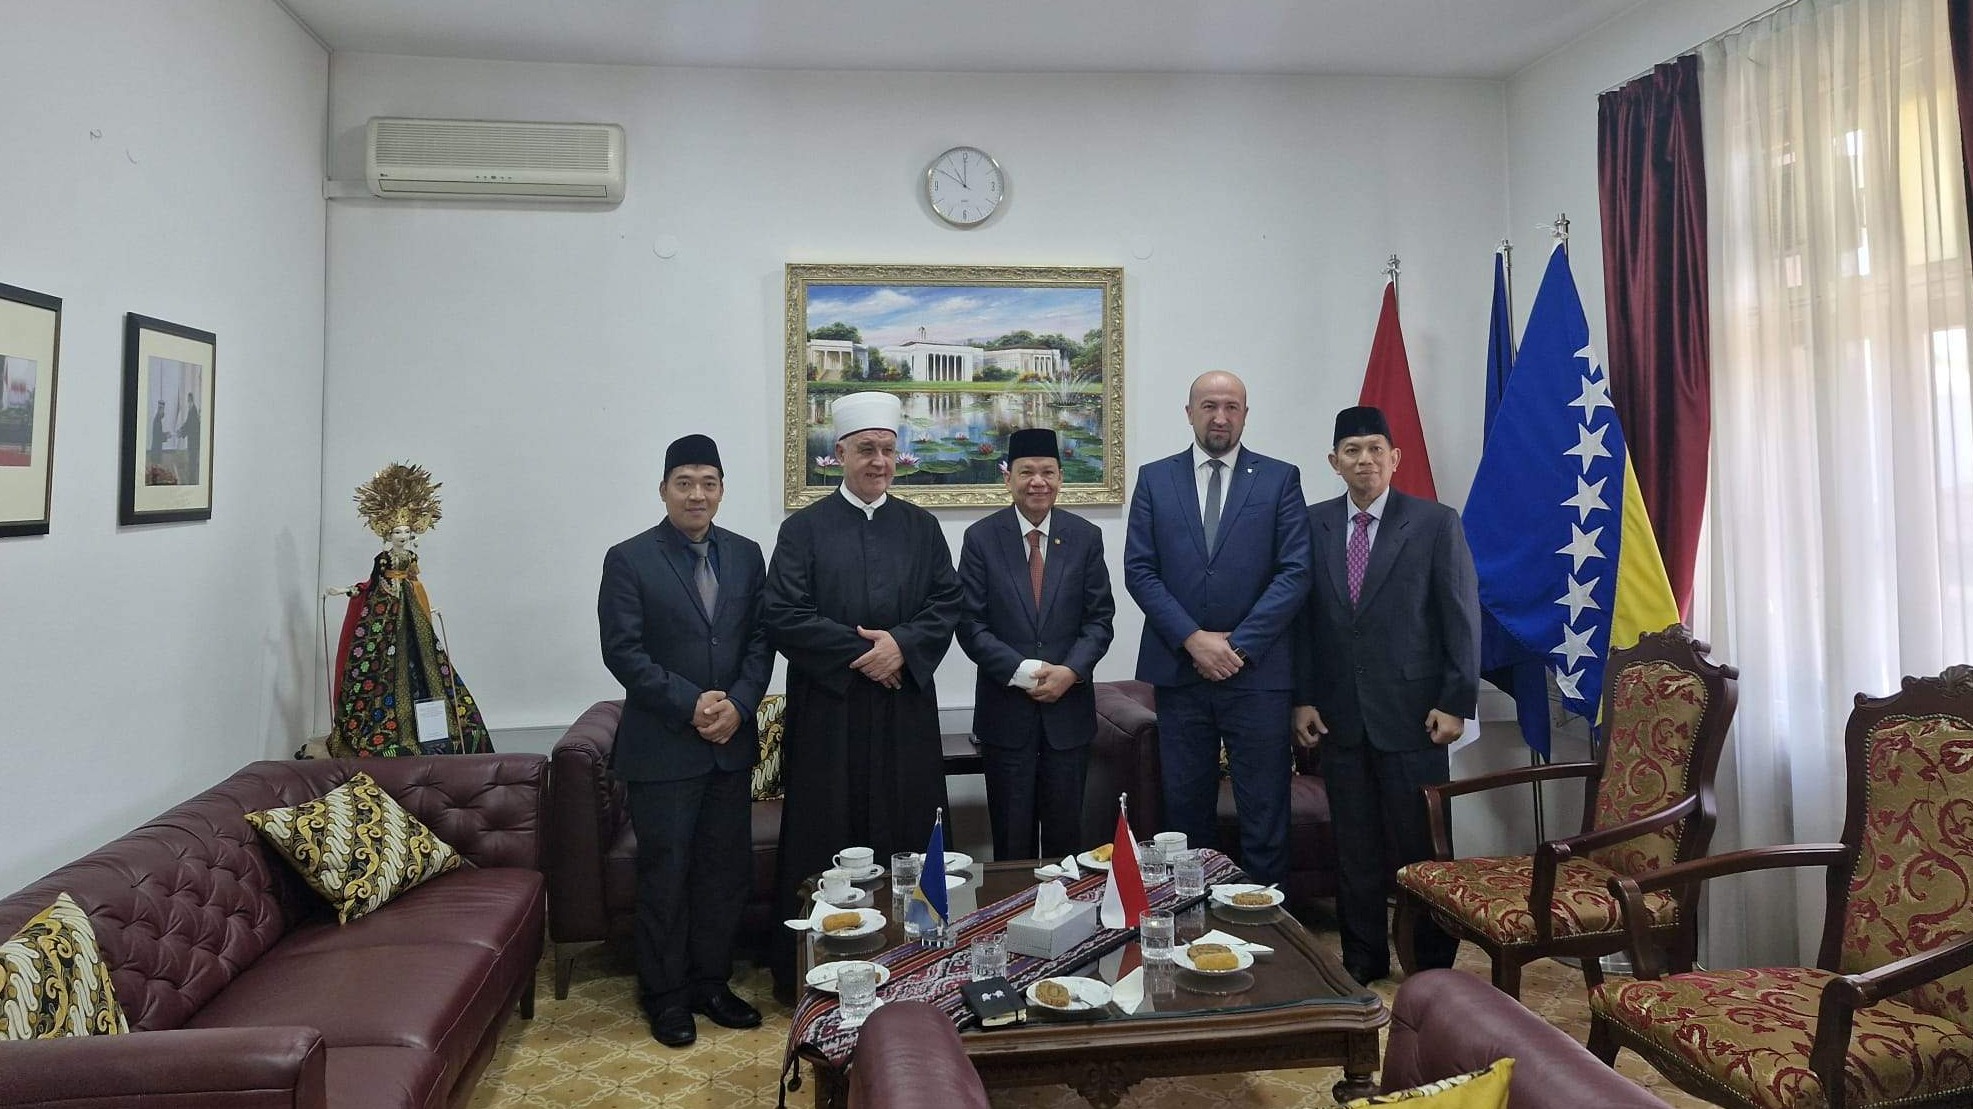 Reisul-ulema sa ambasadorom Indonezije